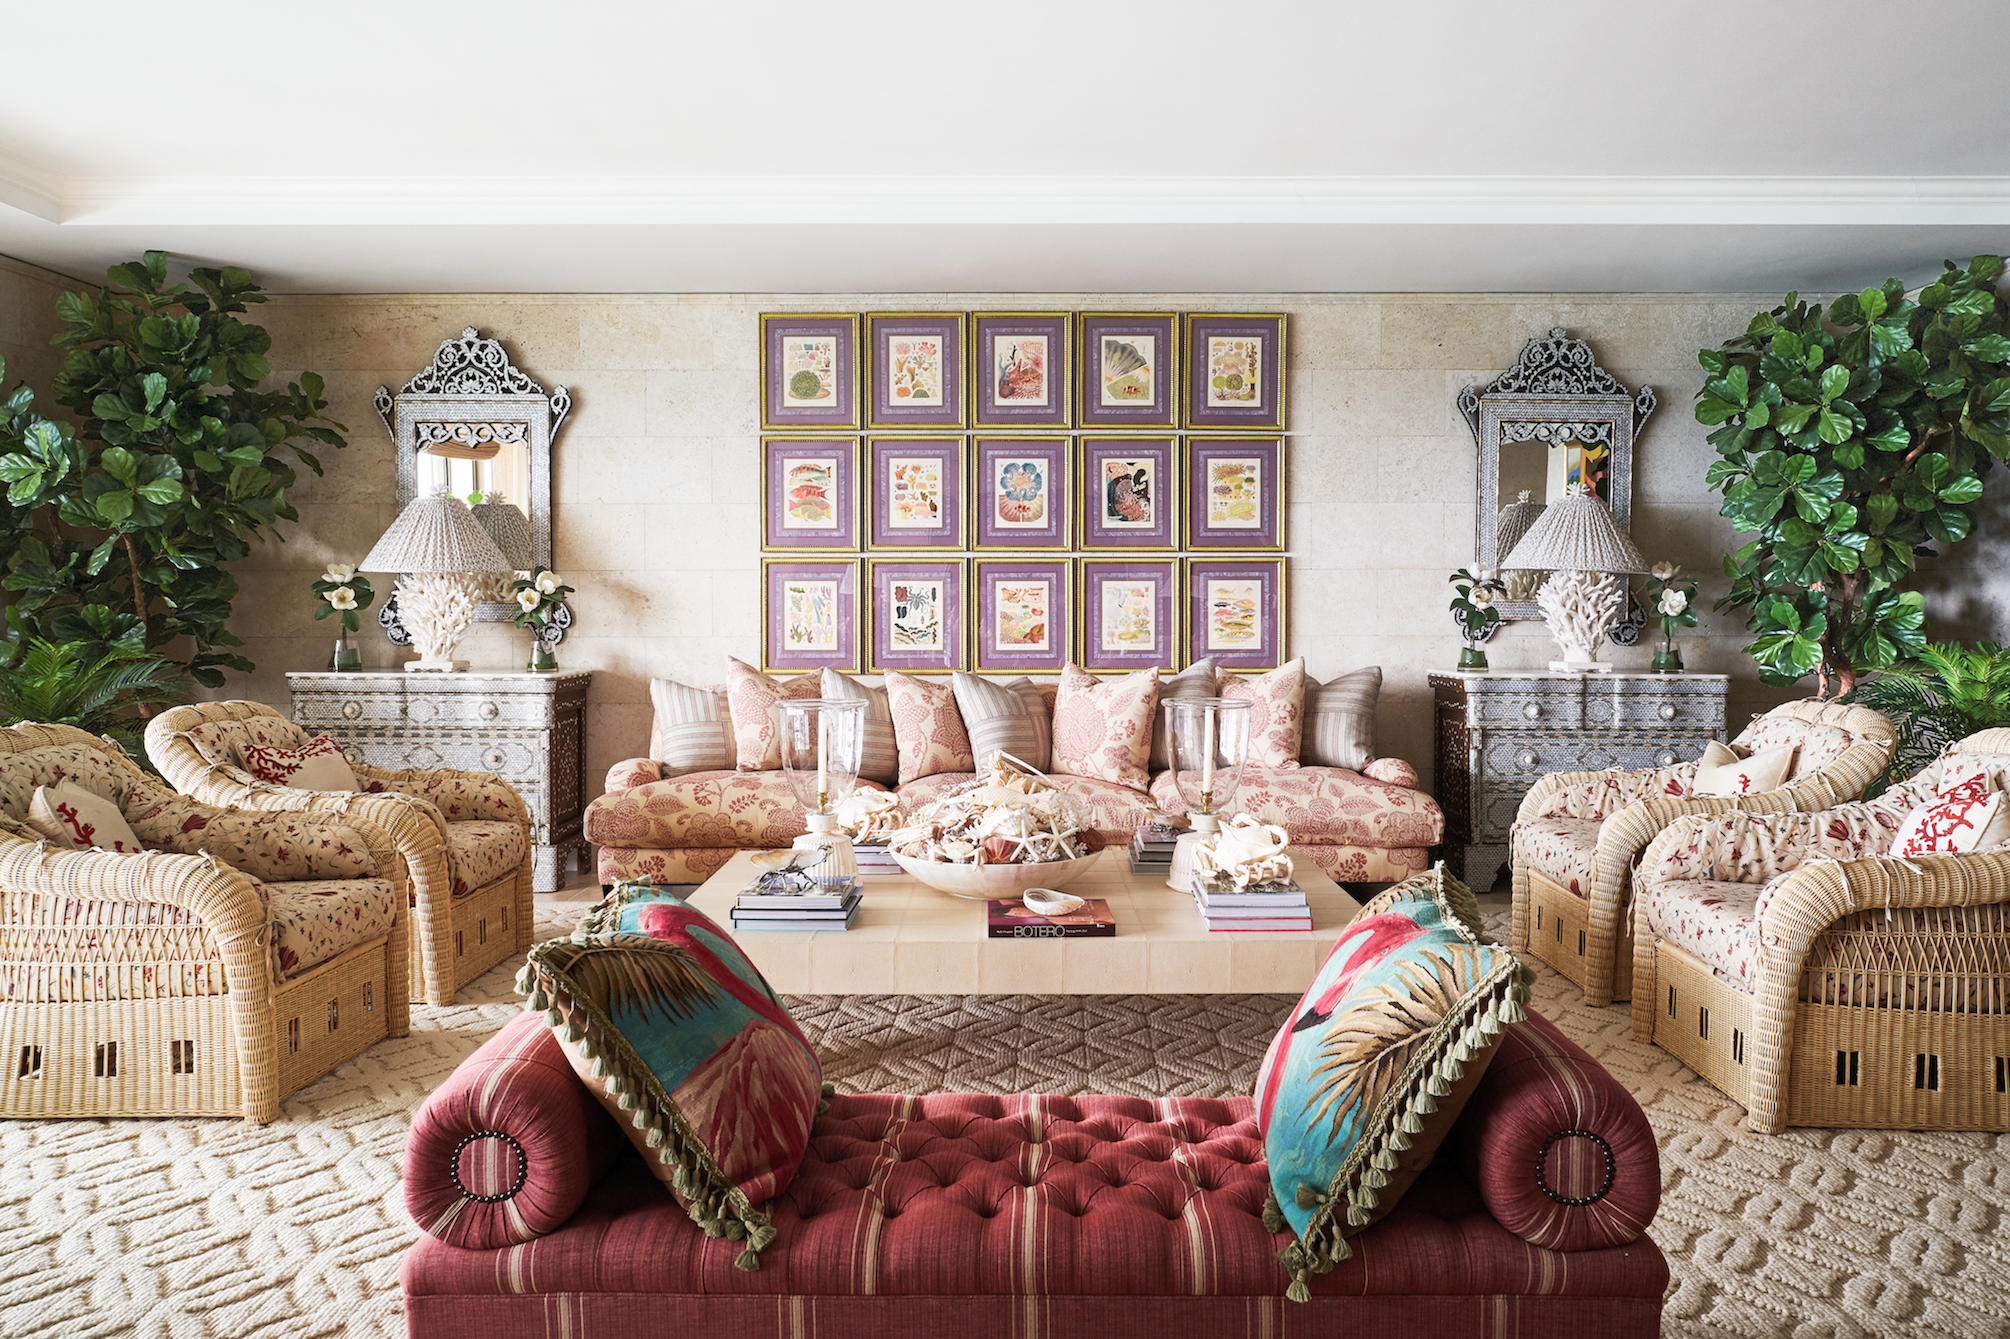 30 Stylish Apartment Decorating Ideas, Apartment Living Room Interior Design Photos